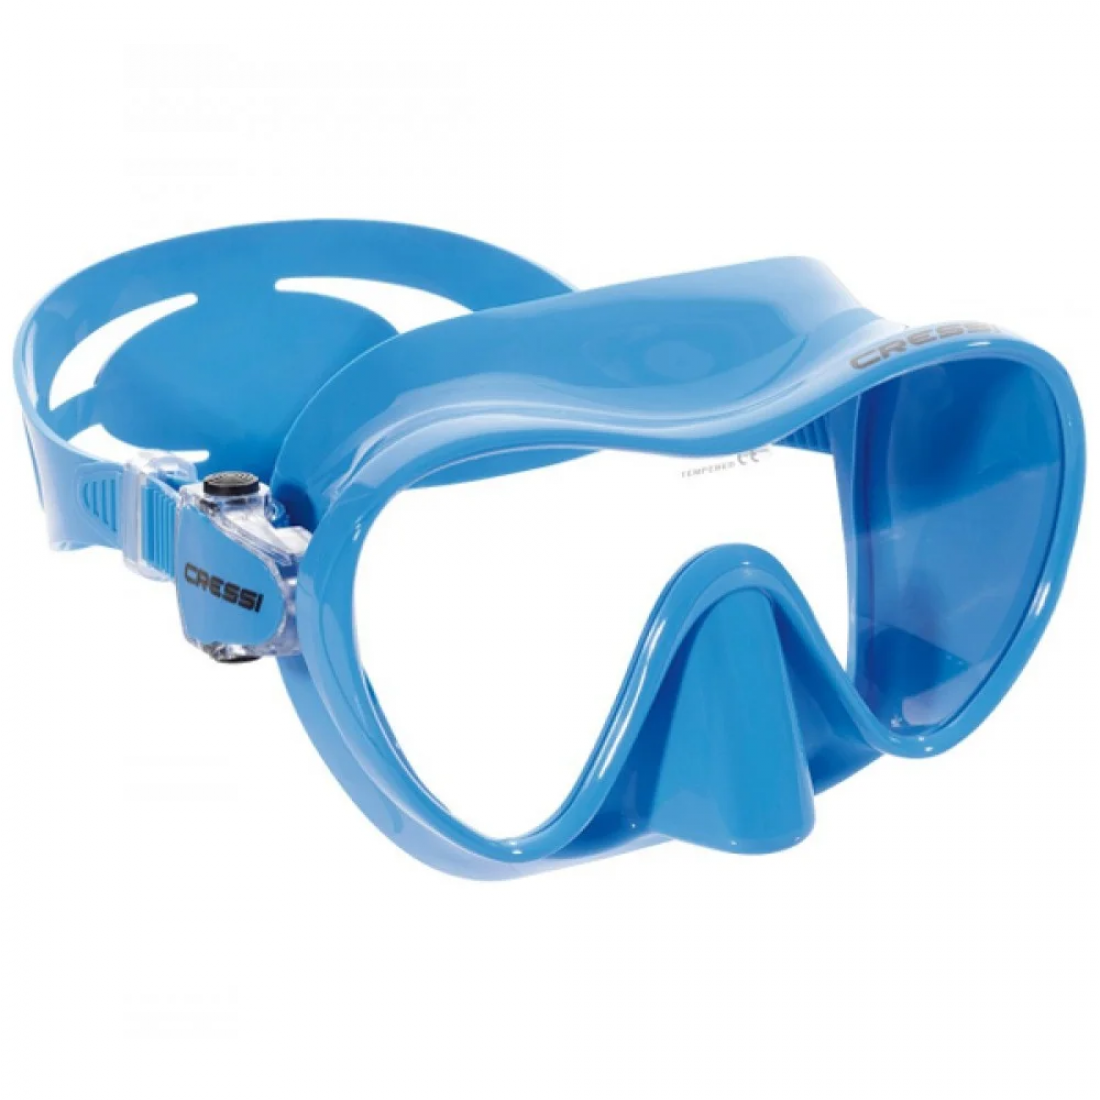 Лучшие маски для плавания. Маска для подводного плавания Cressi. Маска Cressi f1 Blue. Маска Cressi моностекольная. Маска Cressi f1 Junior синяя.